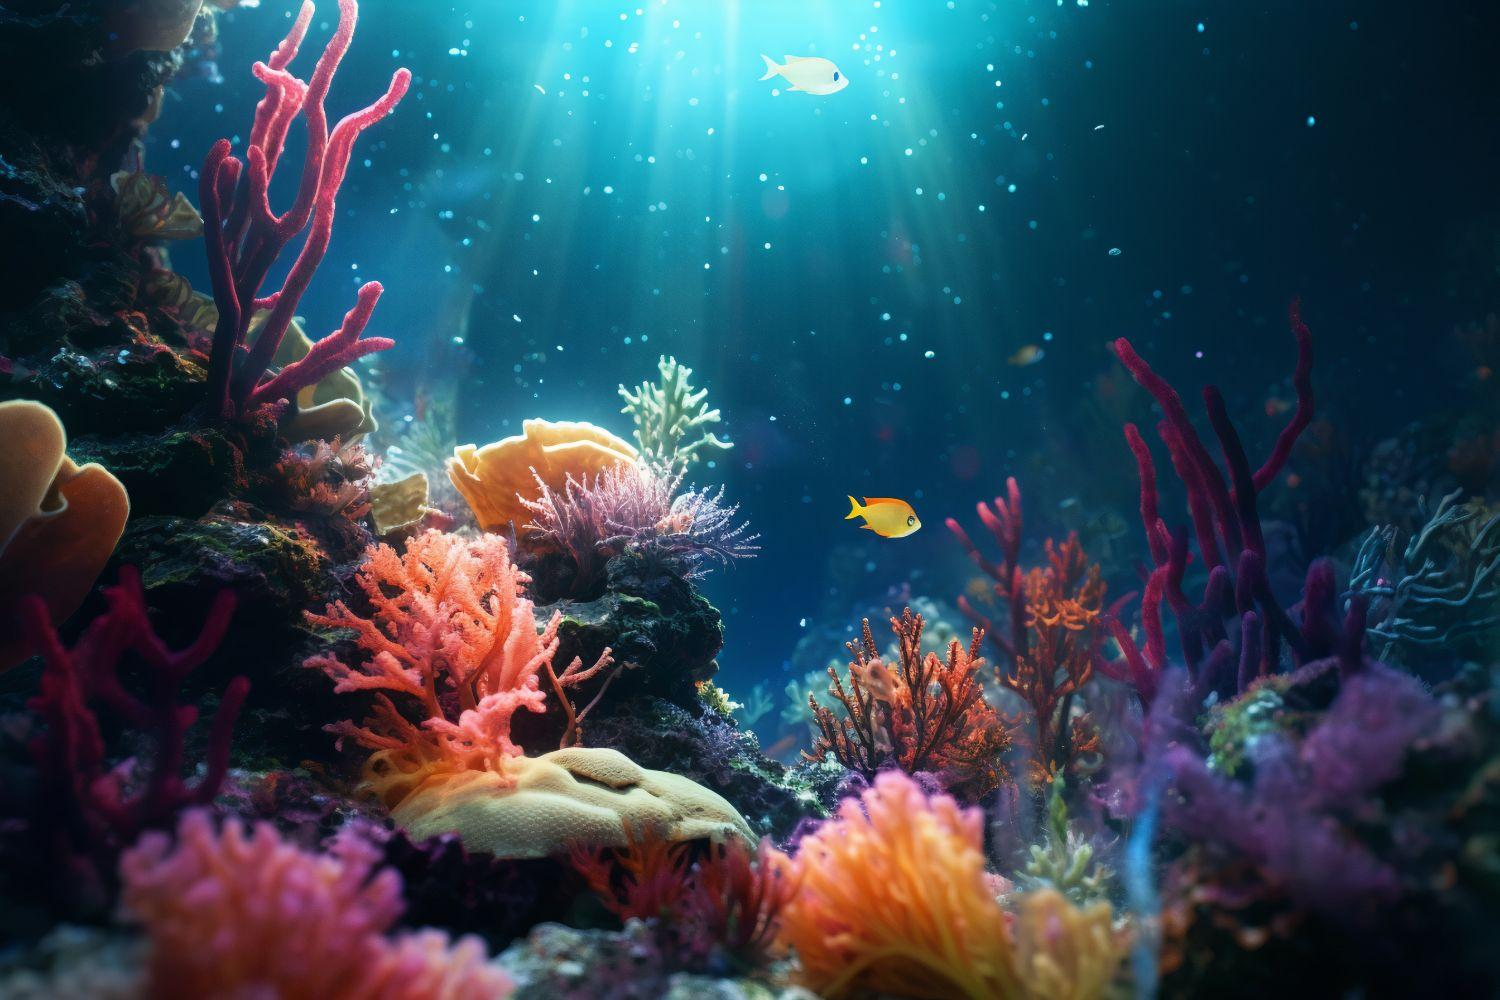 Les aquariums : decouvrez la beaute de la vie sous-marine